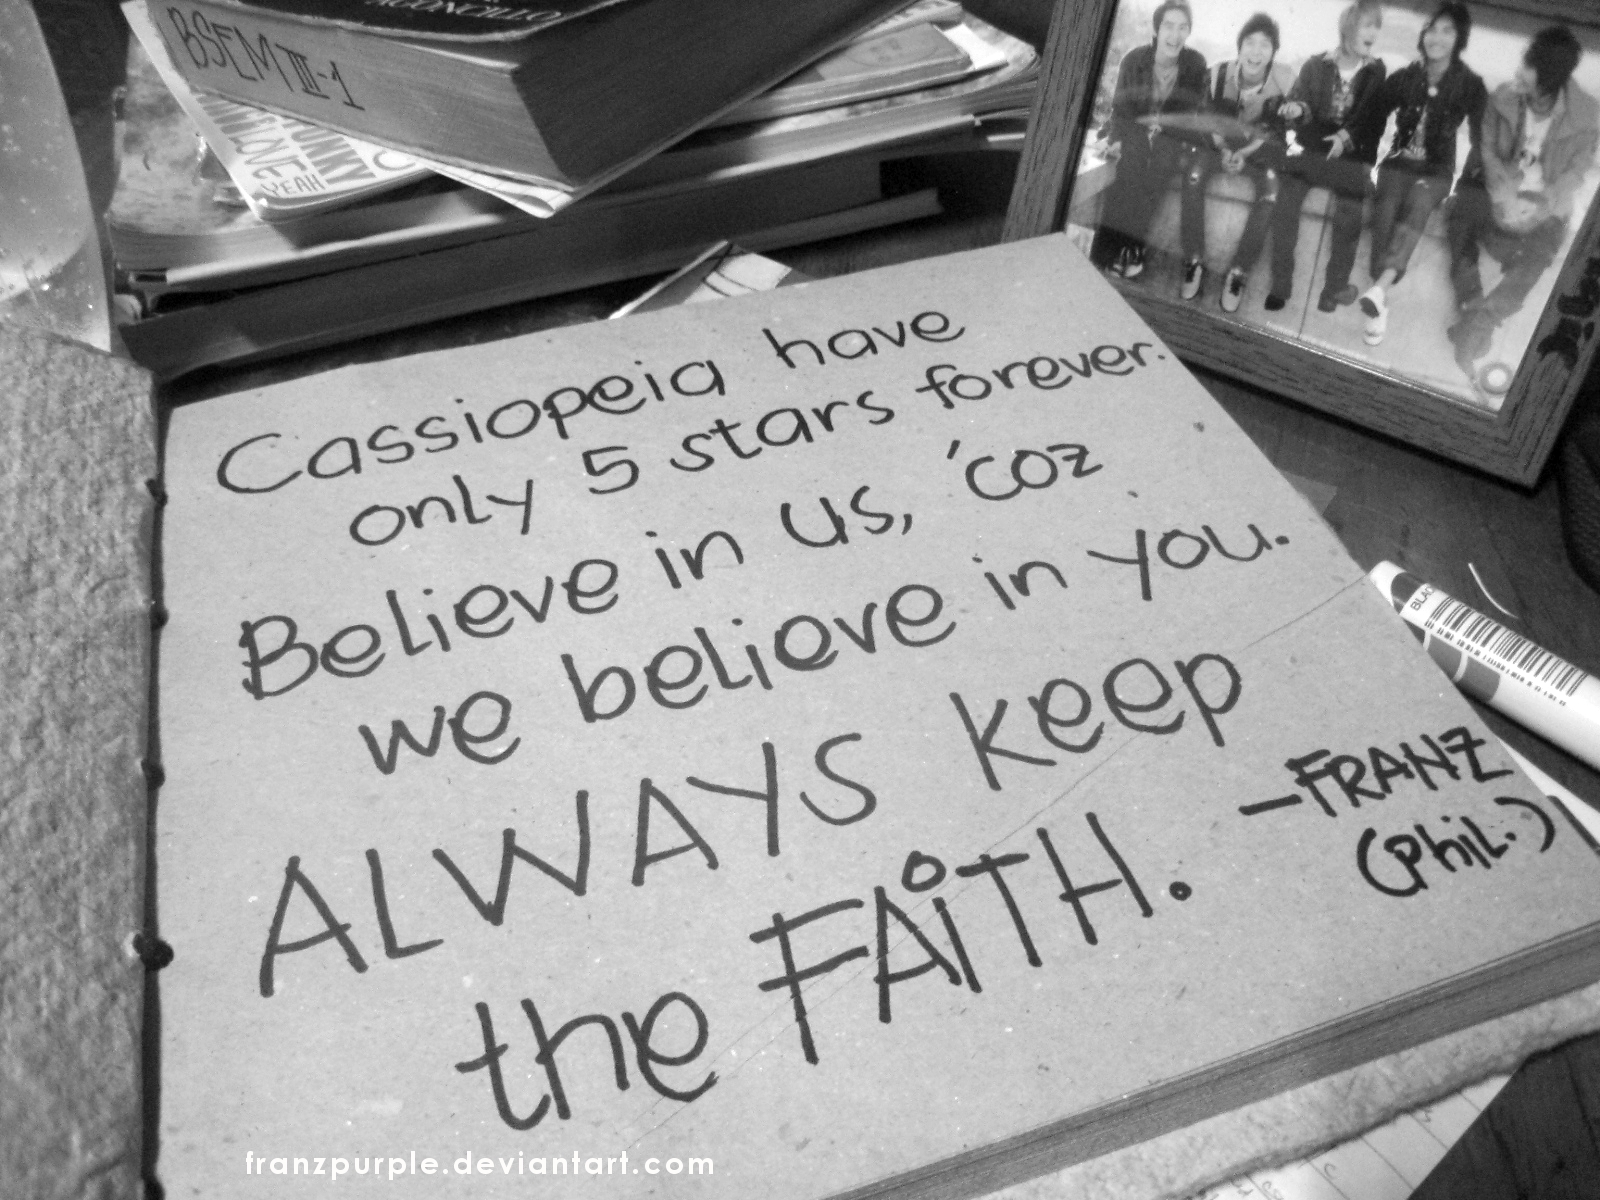 Always keep the best. Always keep the Faith. Перевести always keep the Faith. Keep to Faith.